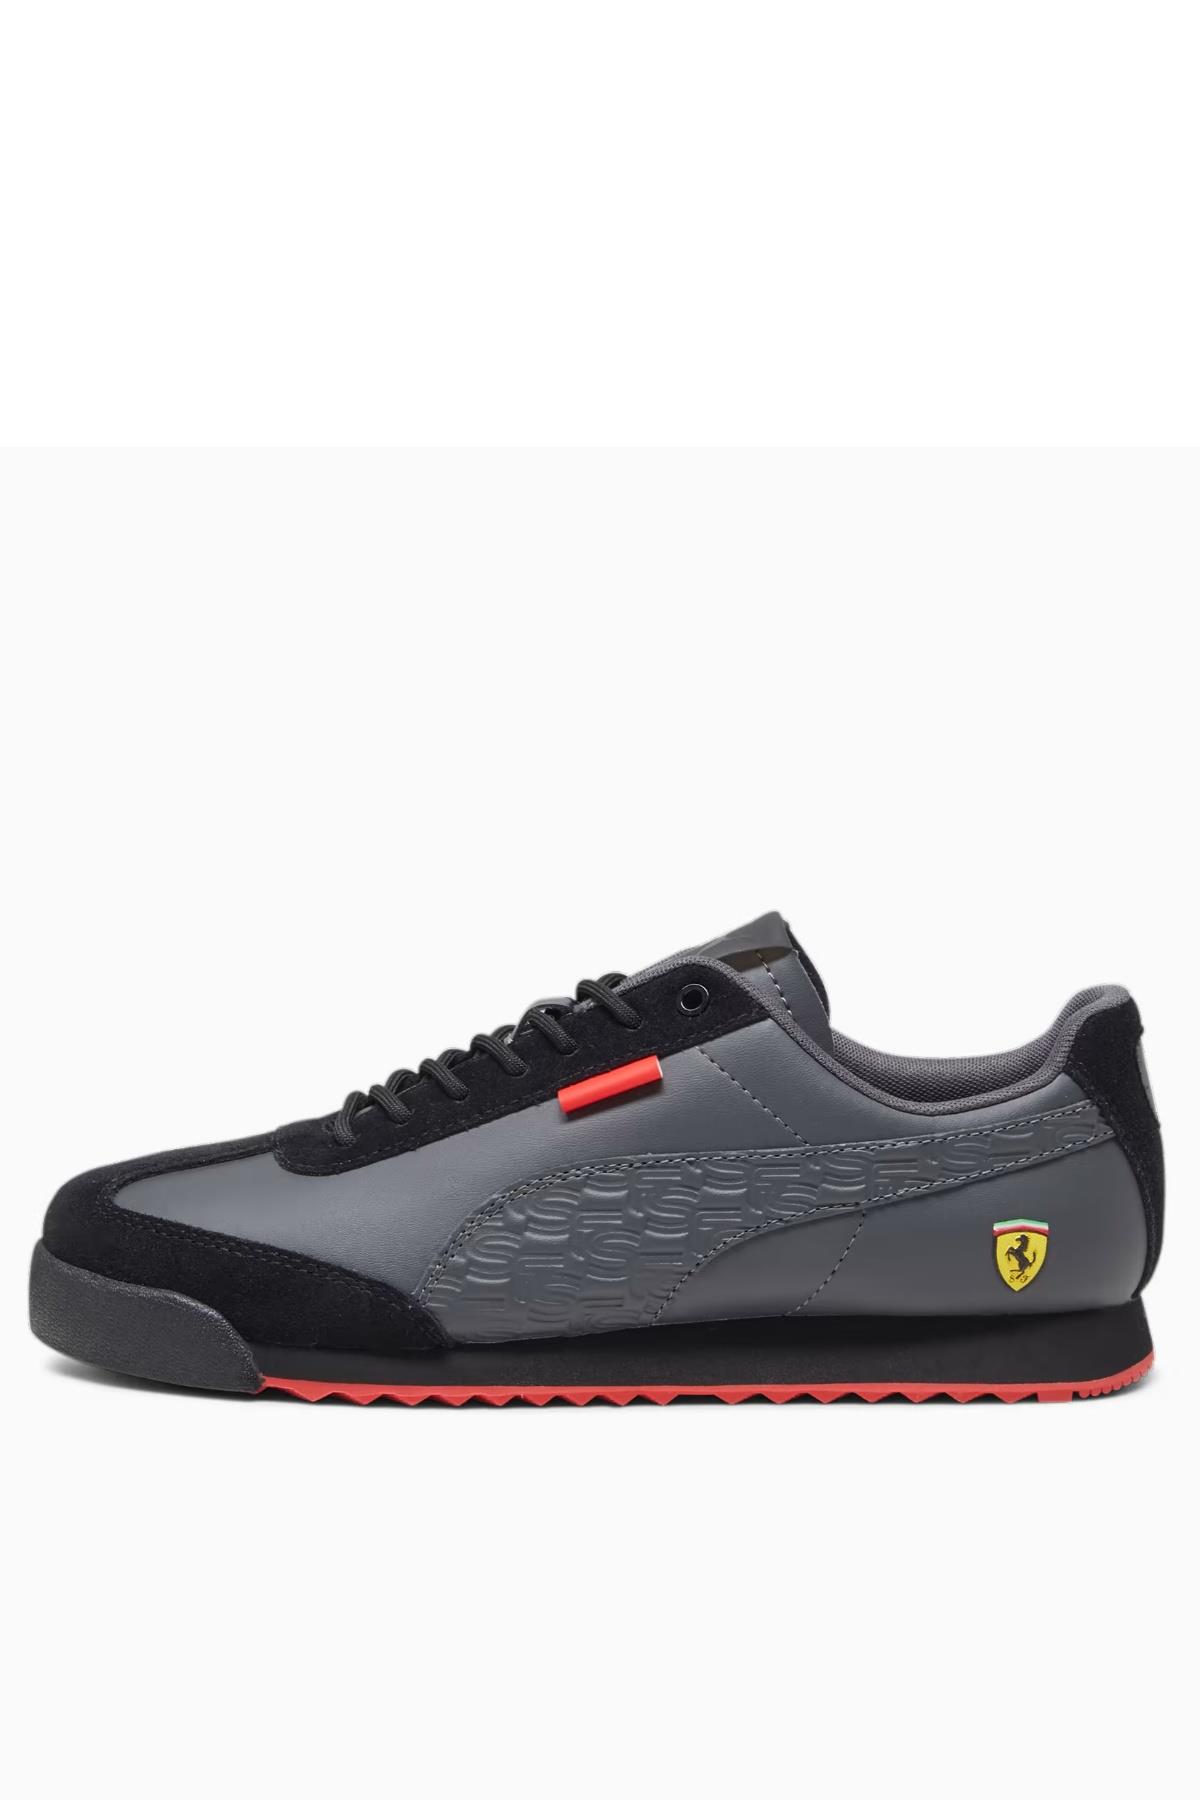 Puma Ferrari Roma Erkek Ayakkabı 30781301